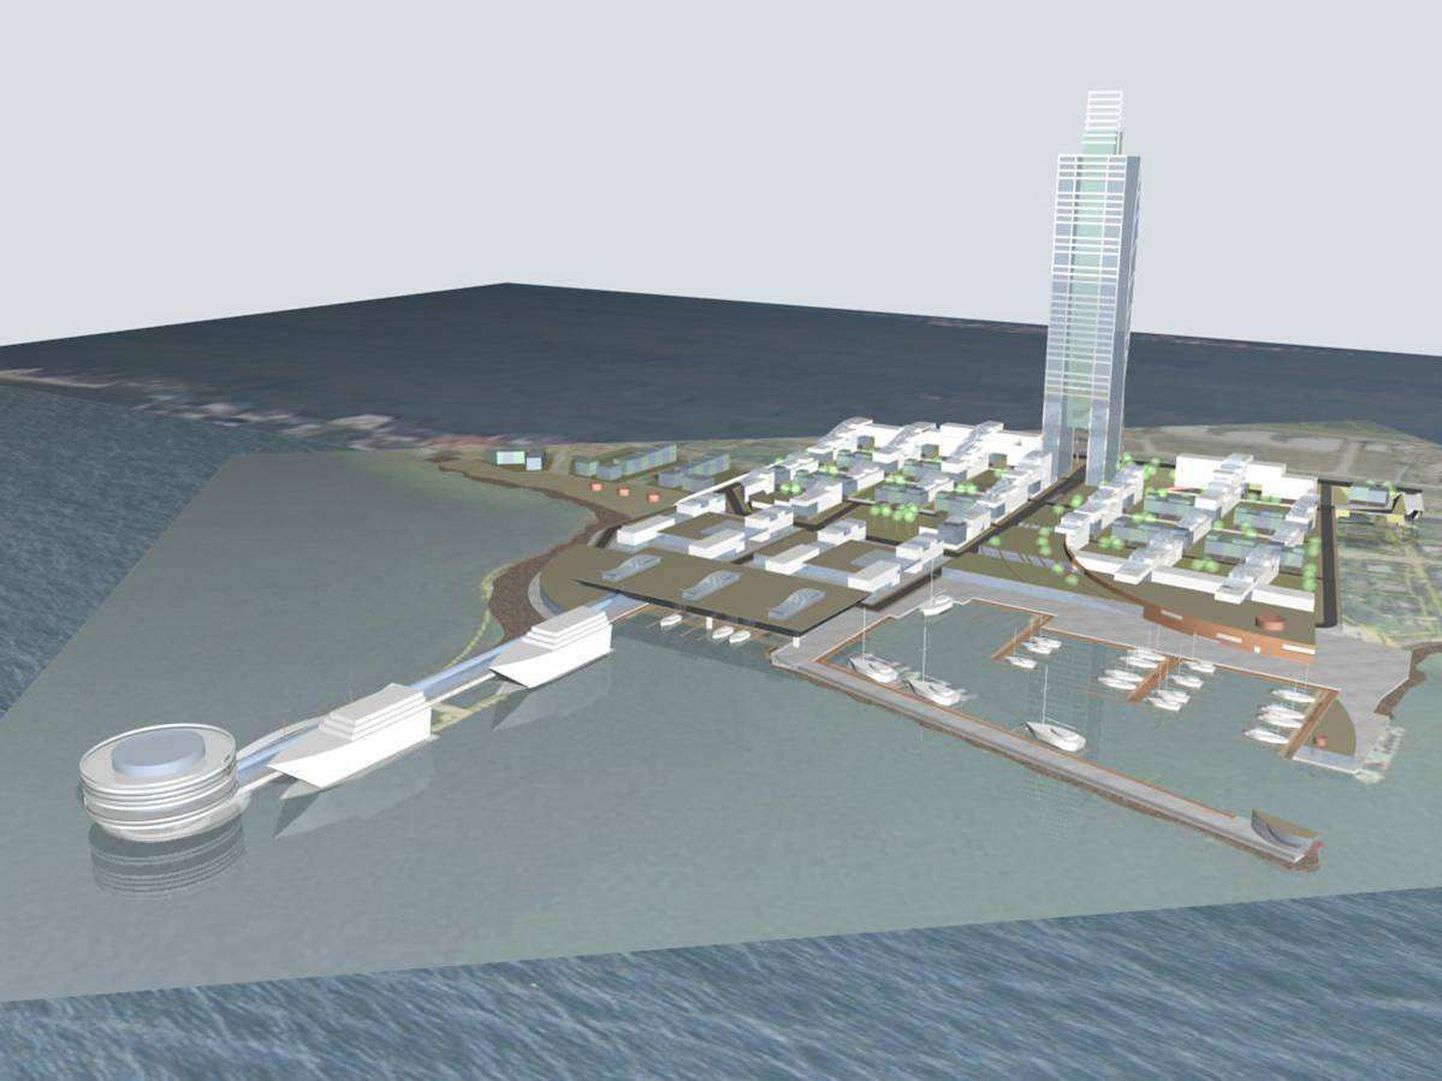 Arhitektuuribüroo KPME tehtud visualiseering Miiduranna sadama tulevikust.